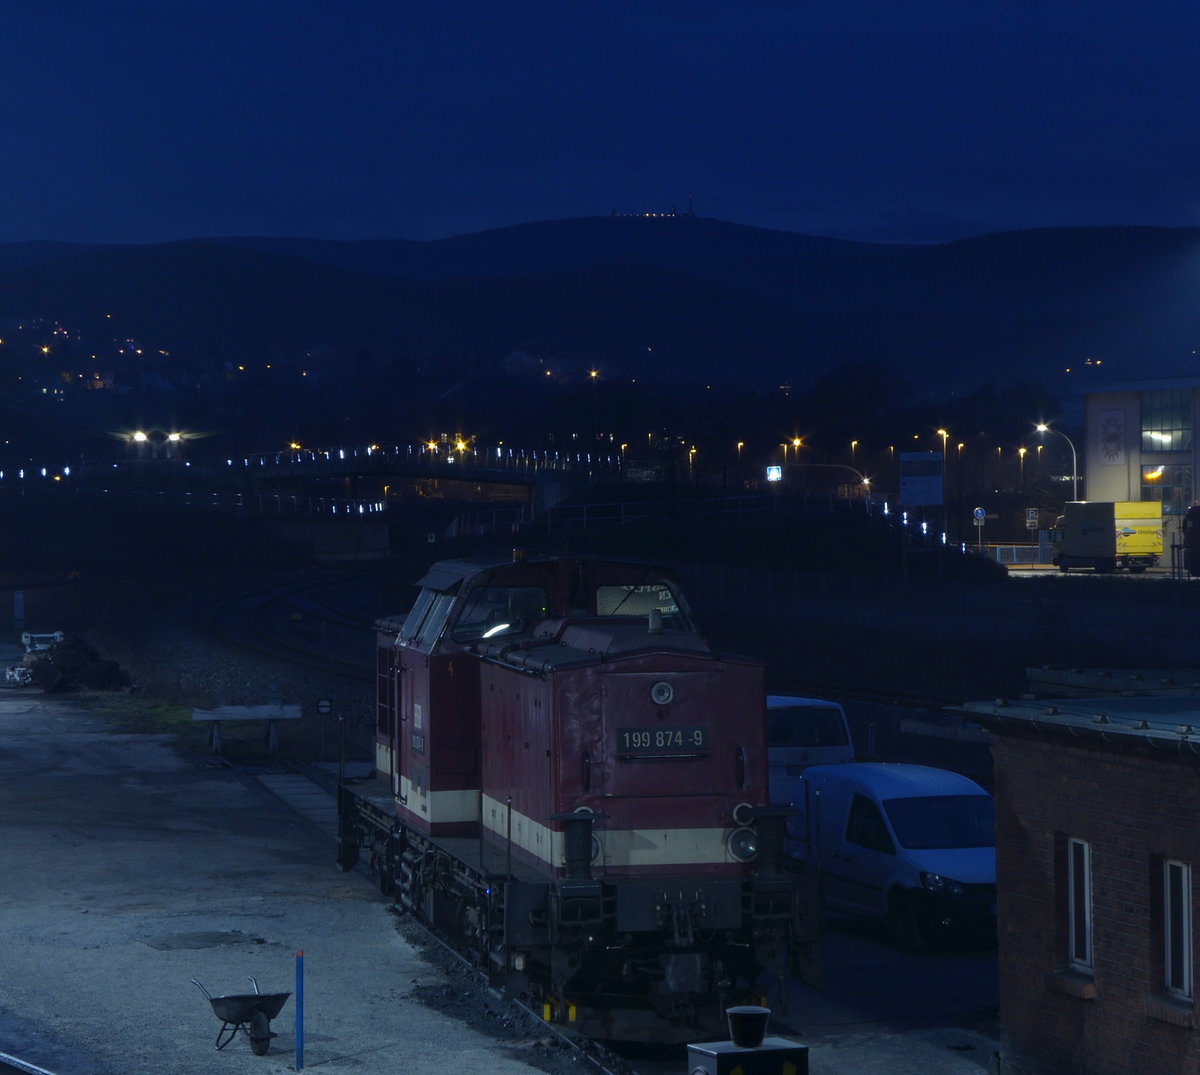 Nacht in Wernigerode. 199 874-9 wartet auf den nächsten Einsatz, im Hintergrund ist die Beleuchtung des Brocken Bahnhos zu sehen.

Wernigerode, 17. Dezember 2016
